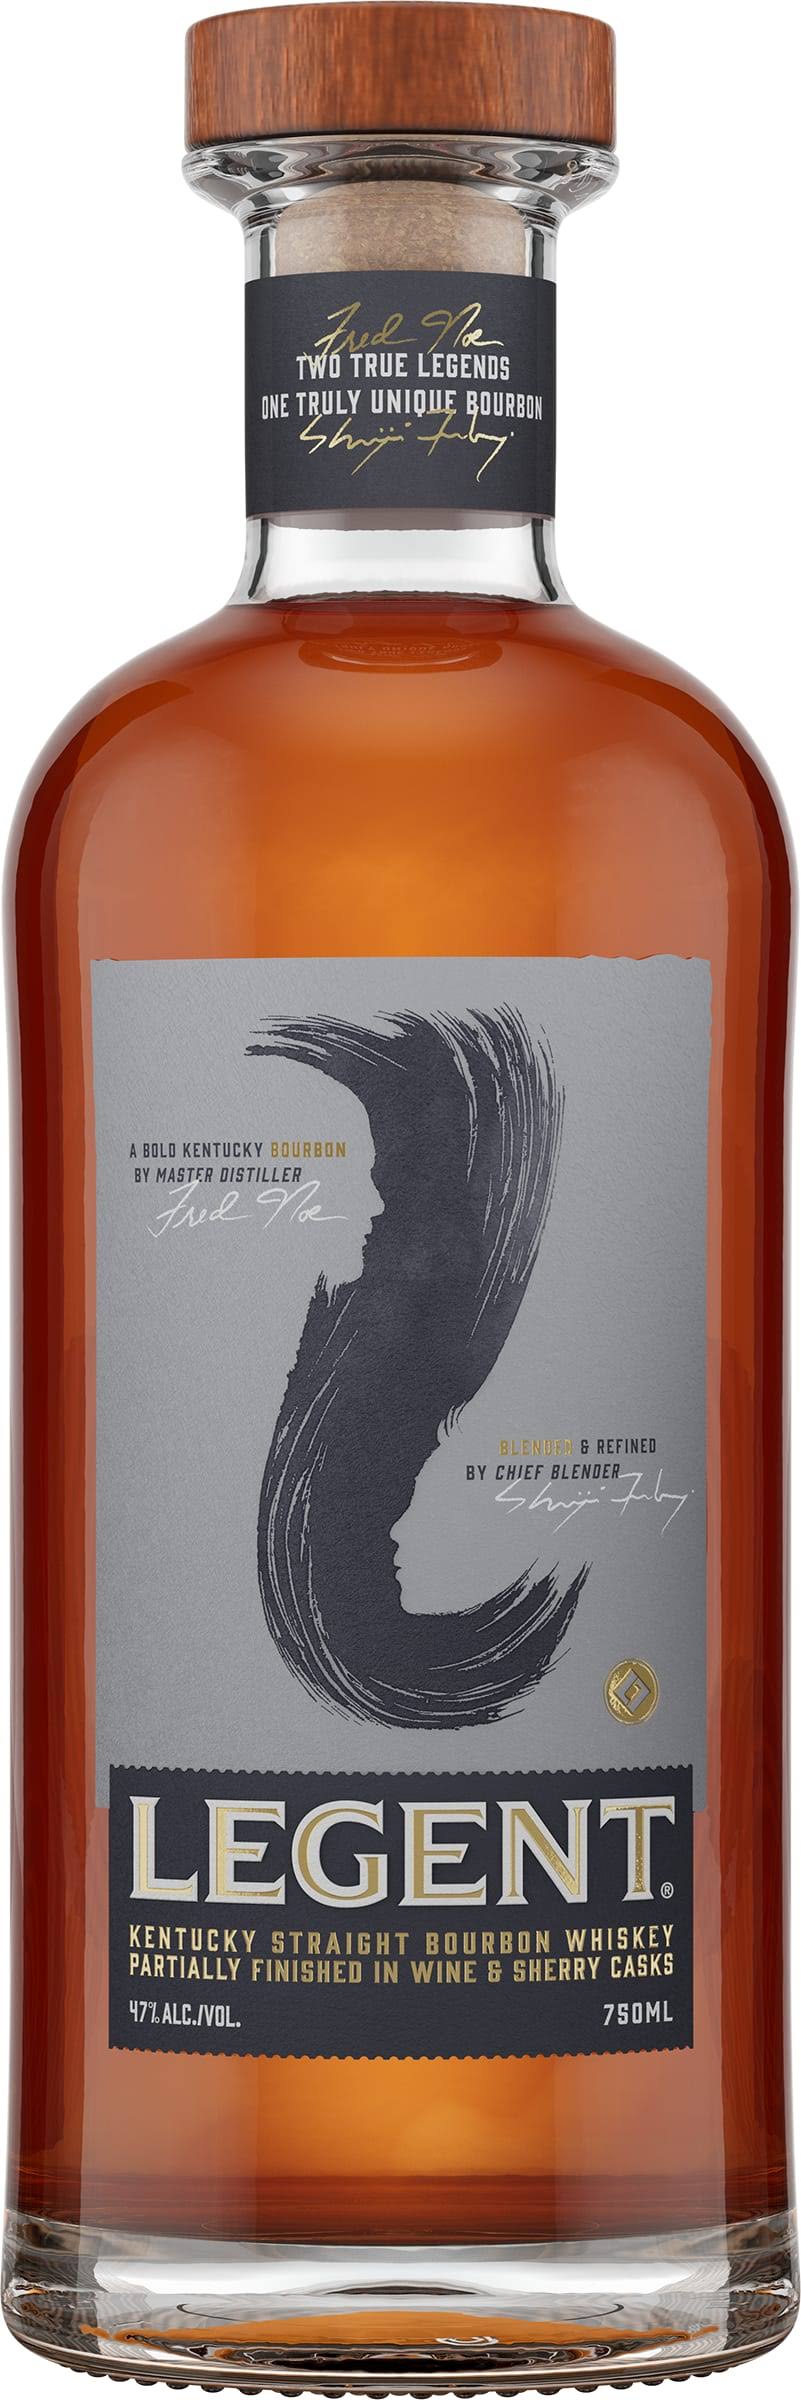 Legent Kentucky Straight Bourbon Whiskey 750ml Bottle